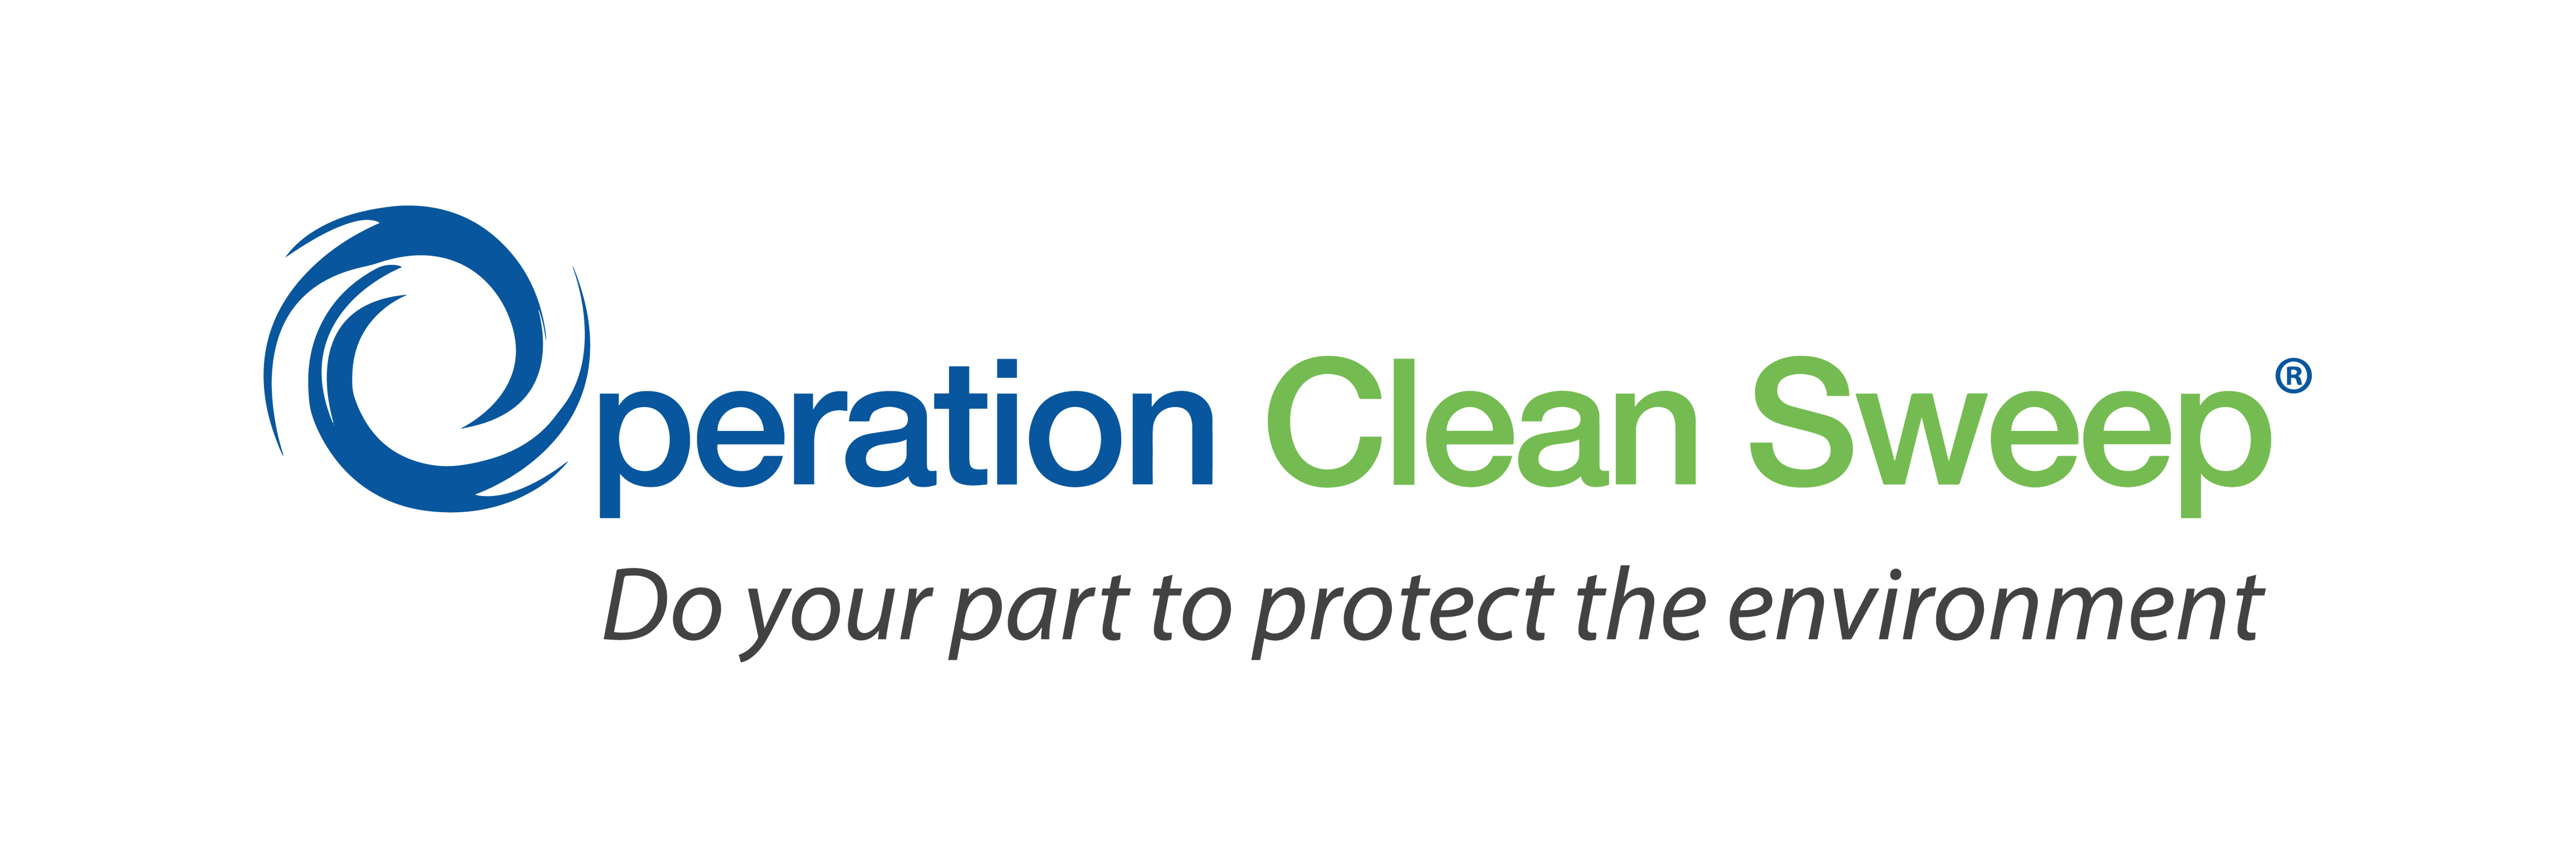 sviluppo_sostenibile_operation_Clean_Sweep